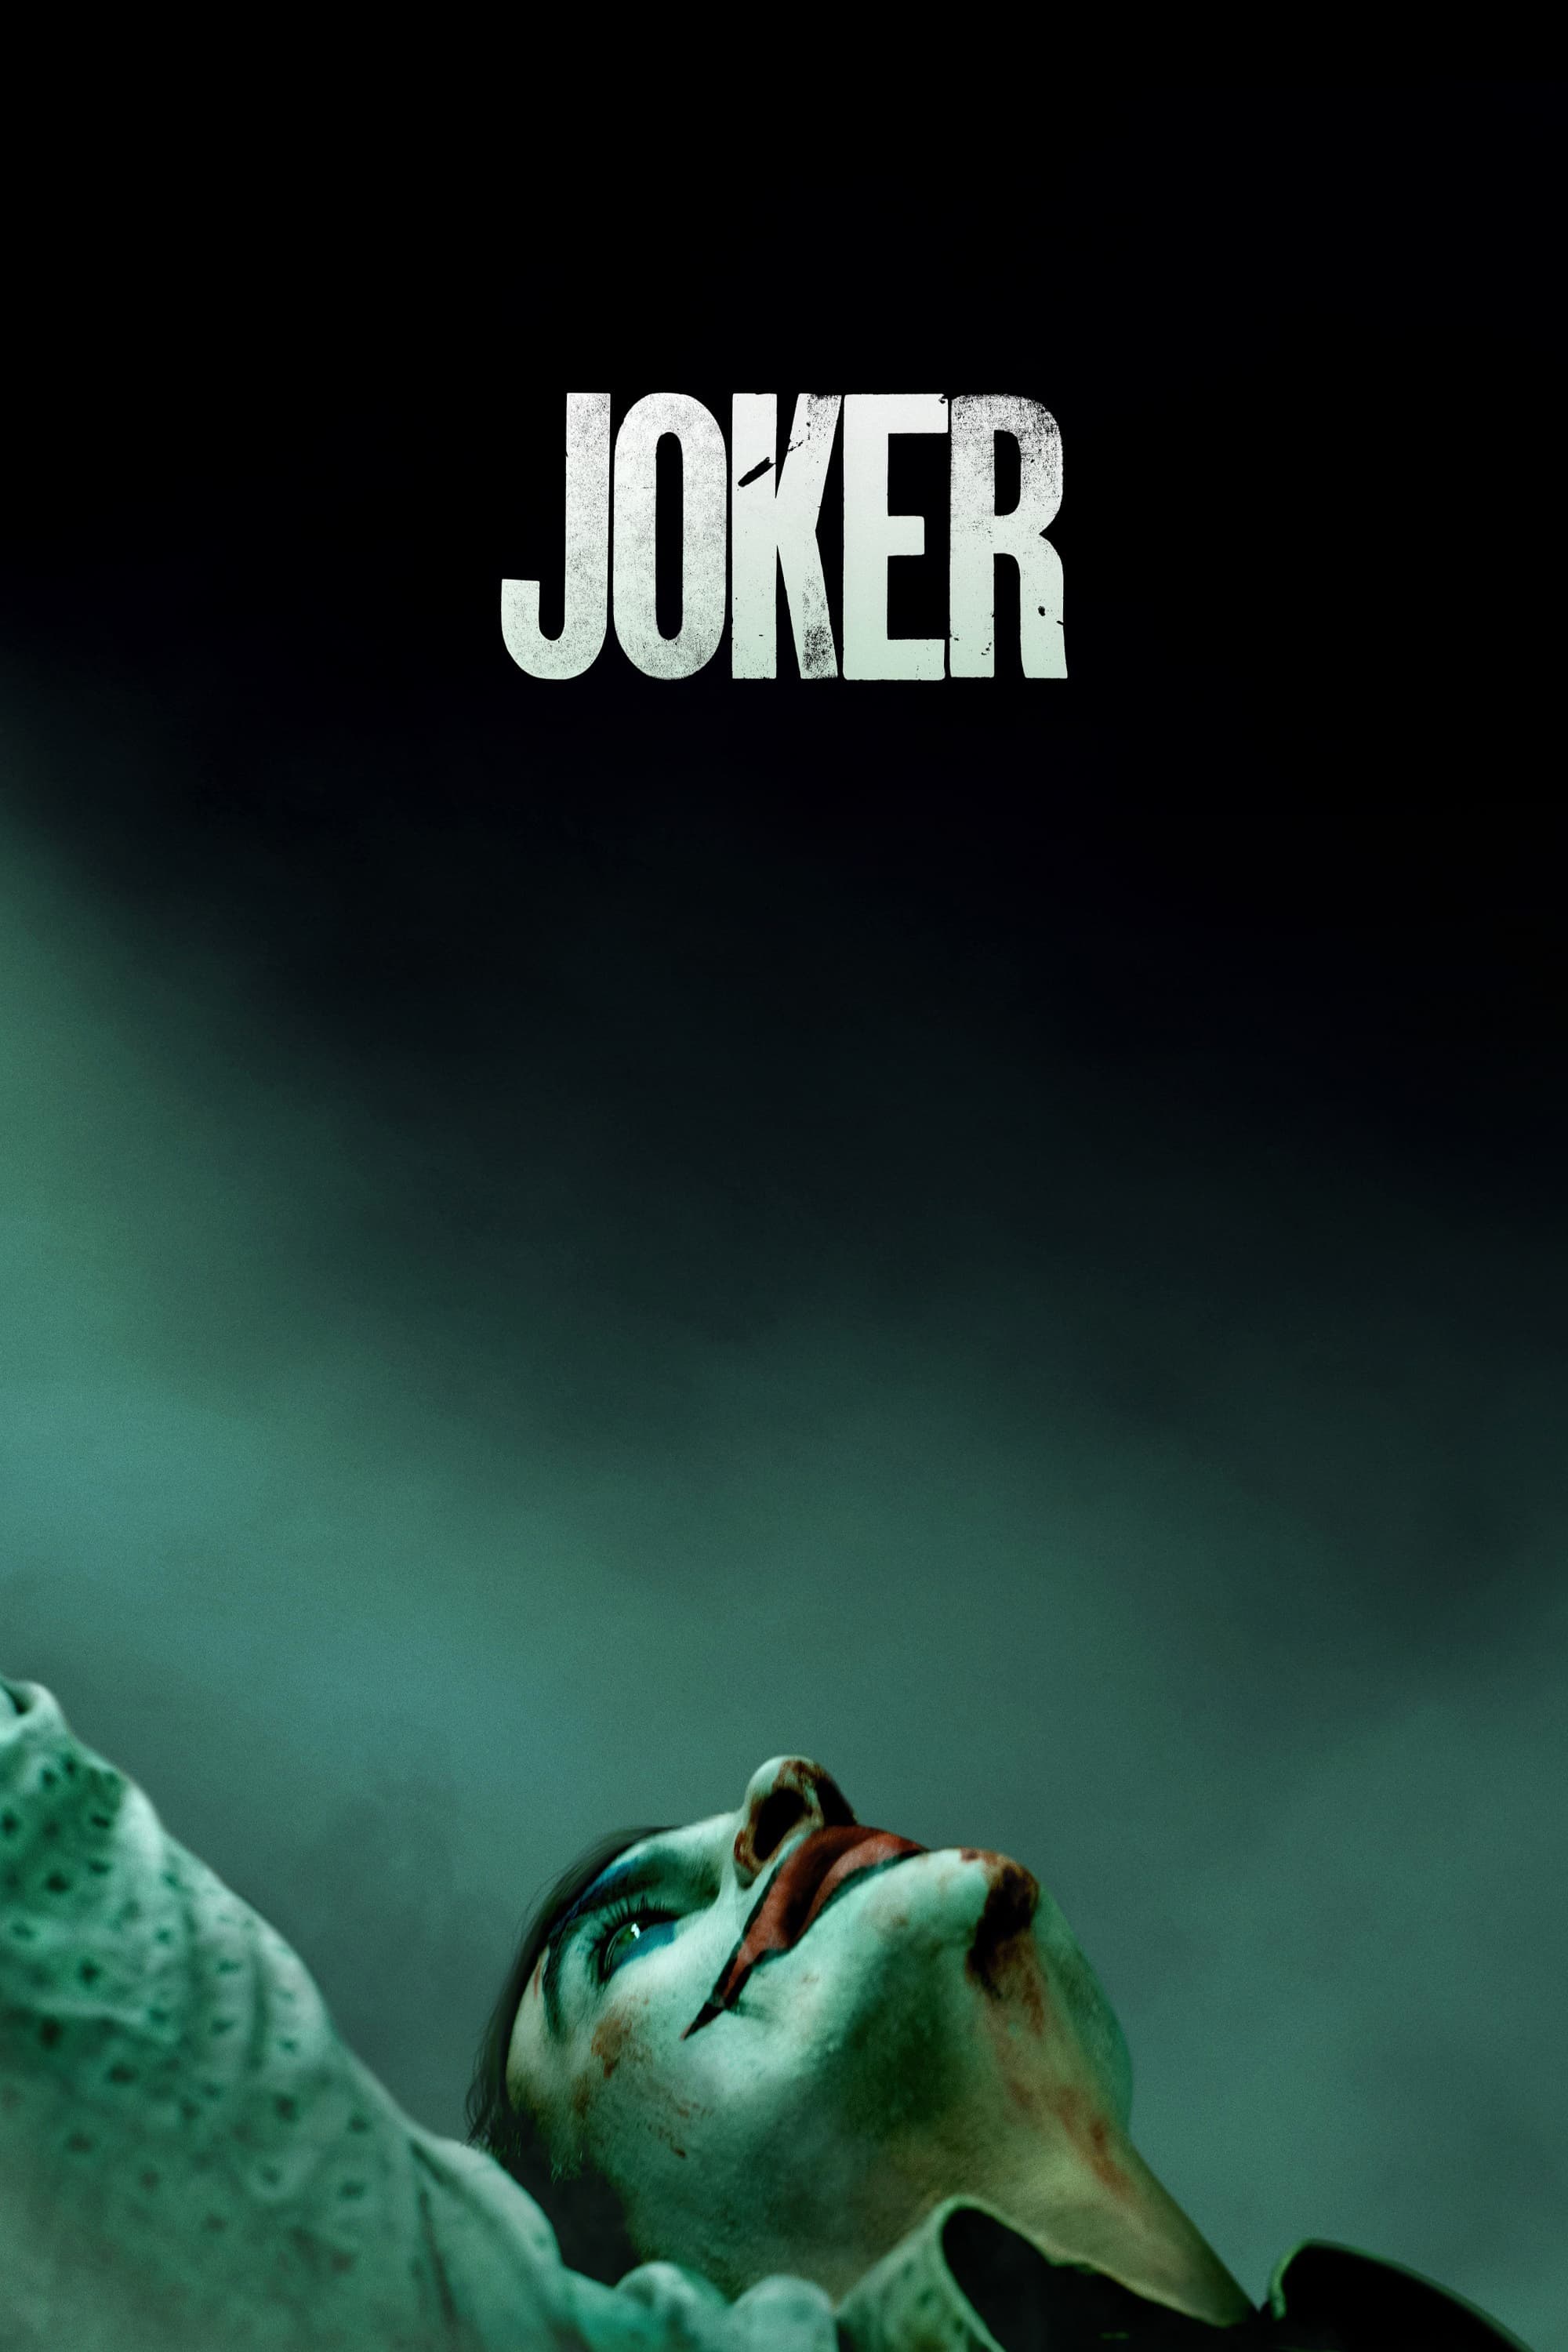 Joker (2019) Official Teaser Trailer